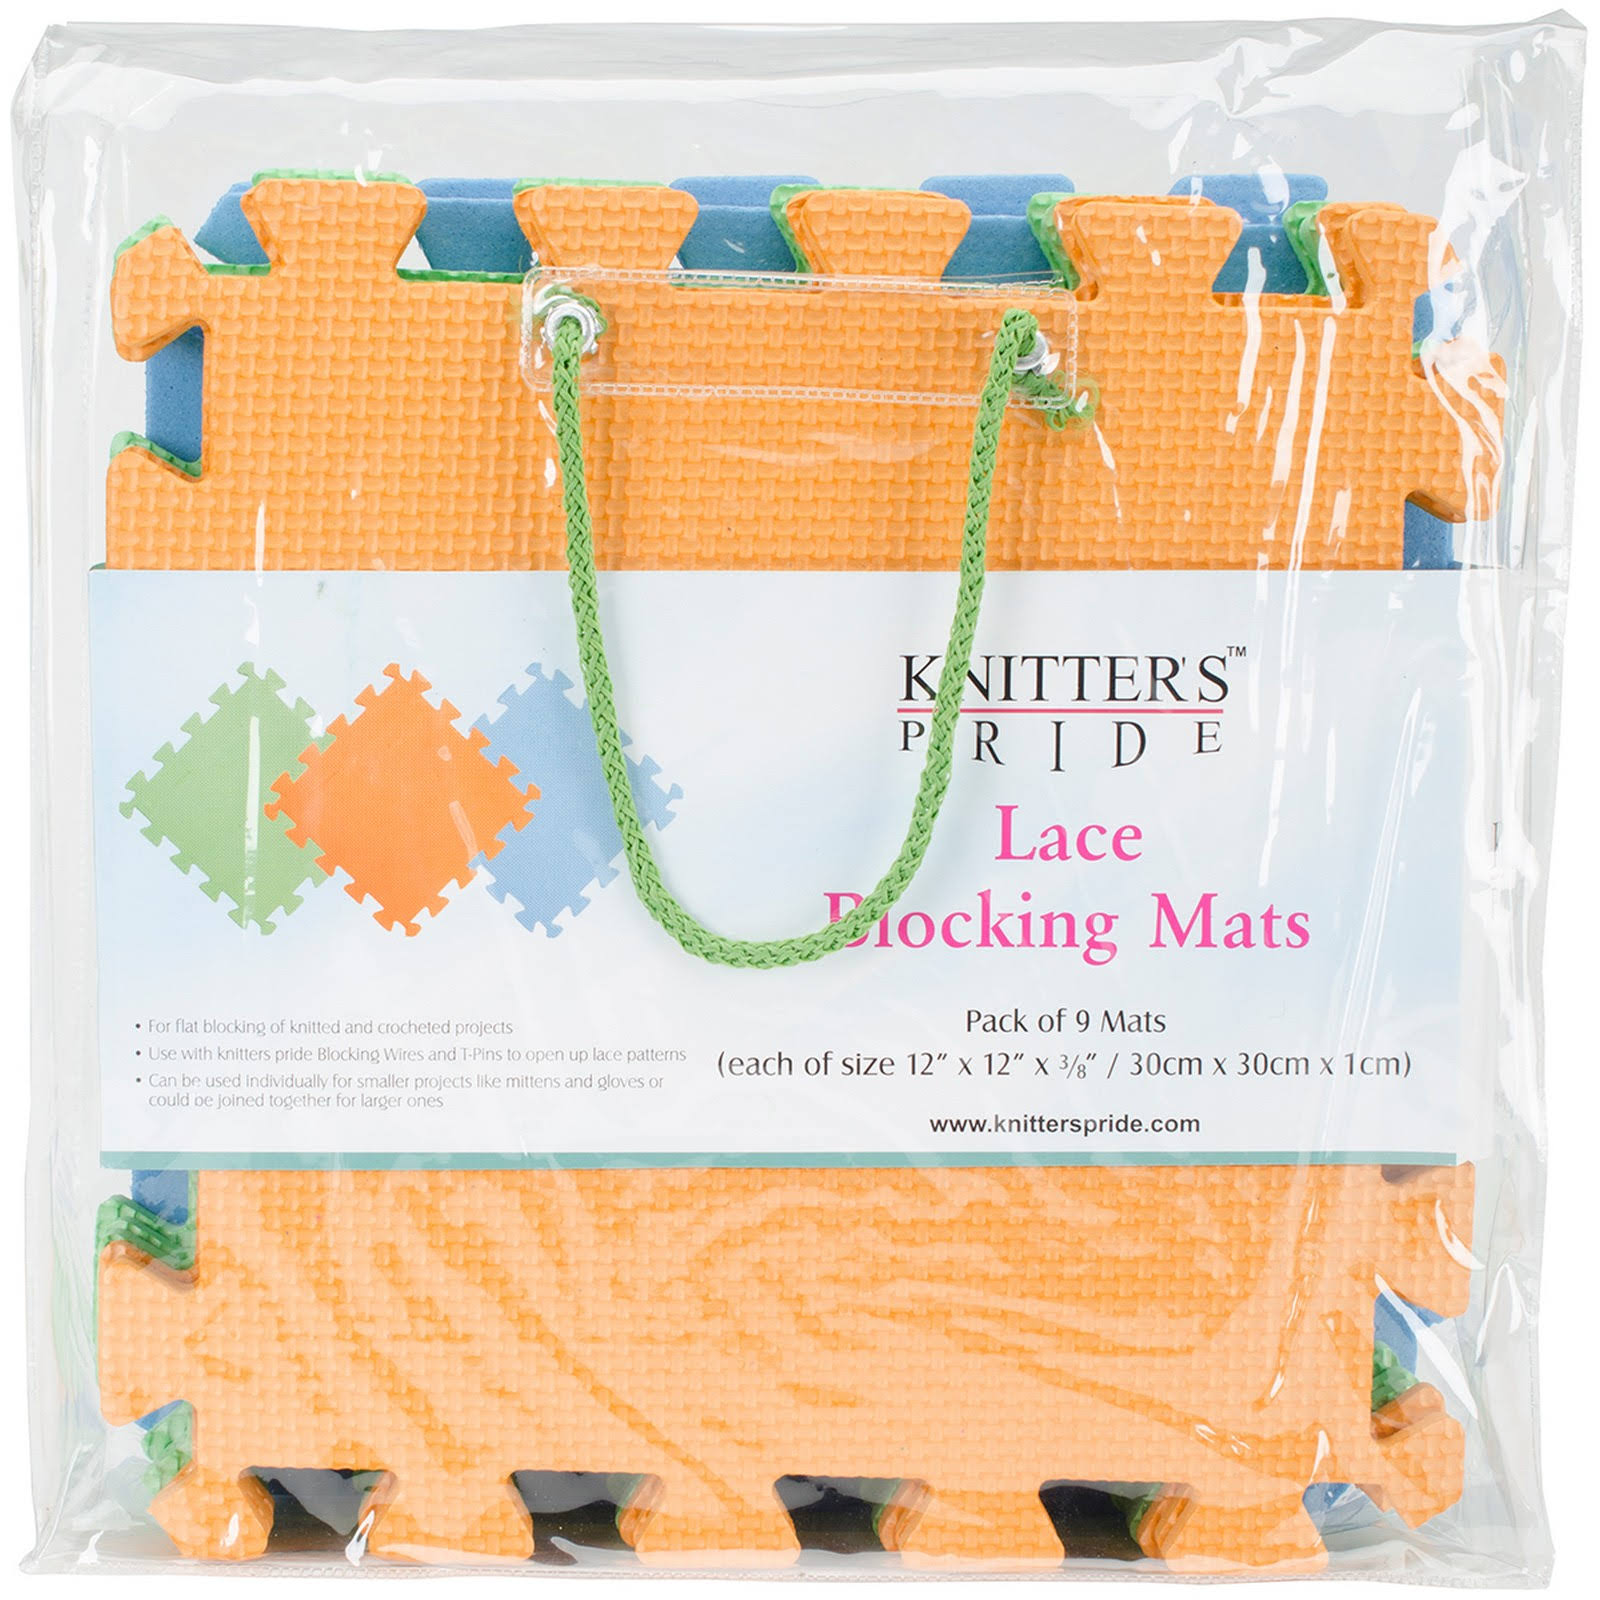 Knitters Pride Lace Blocking Mats - 9 Mats, 12" X 12"